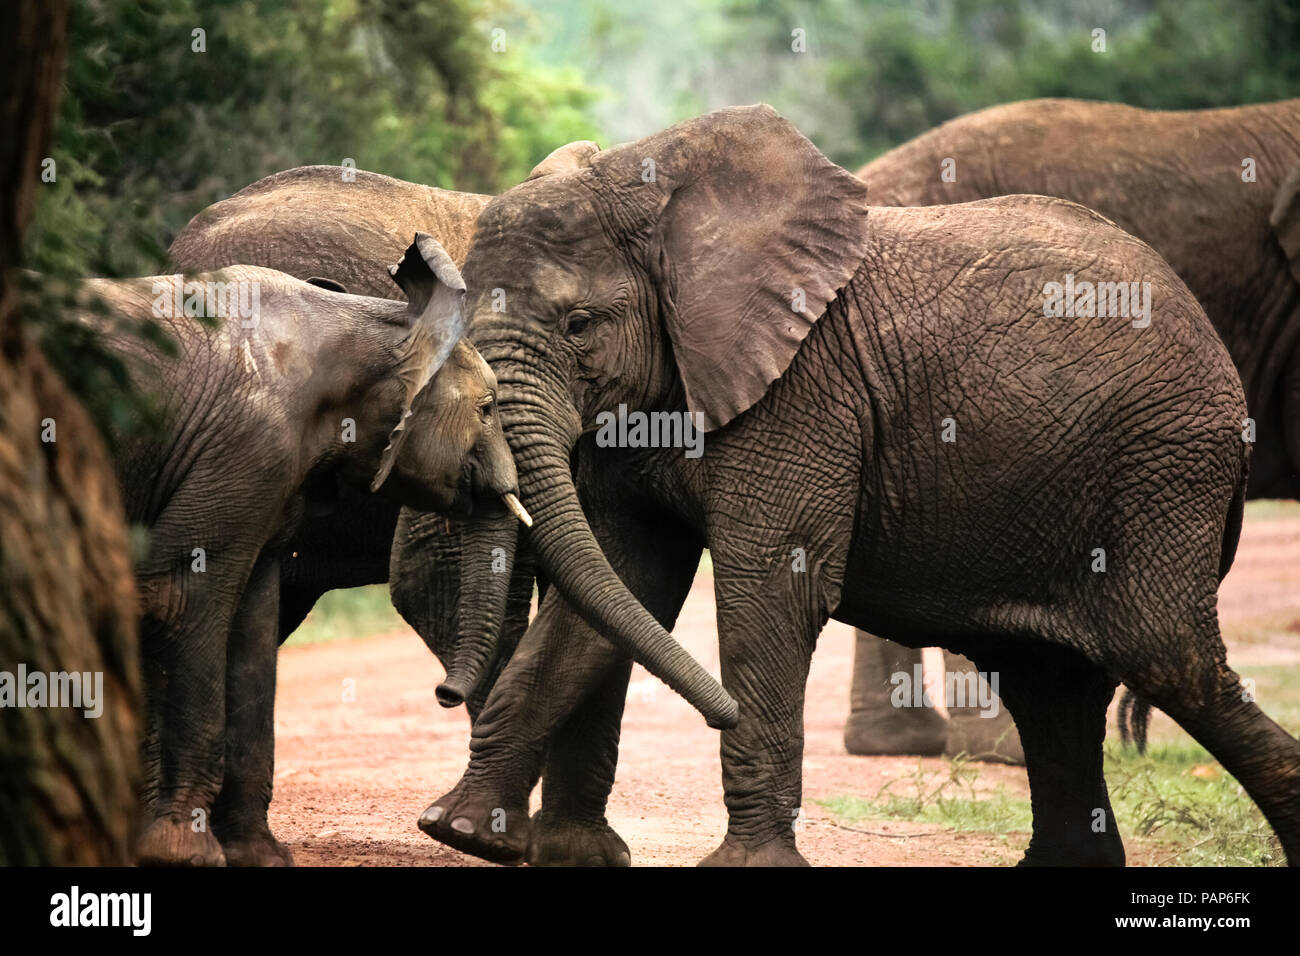 L'Ouganda, le Parc National de Kigezi, les jeunes éléphants jouer ensemble Banque D'Images